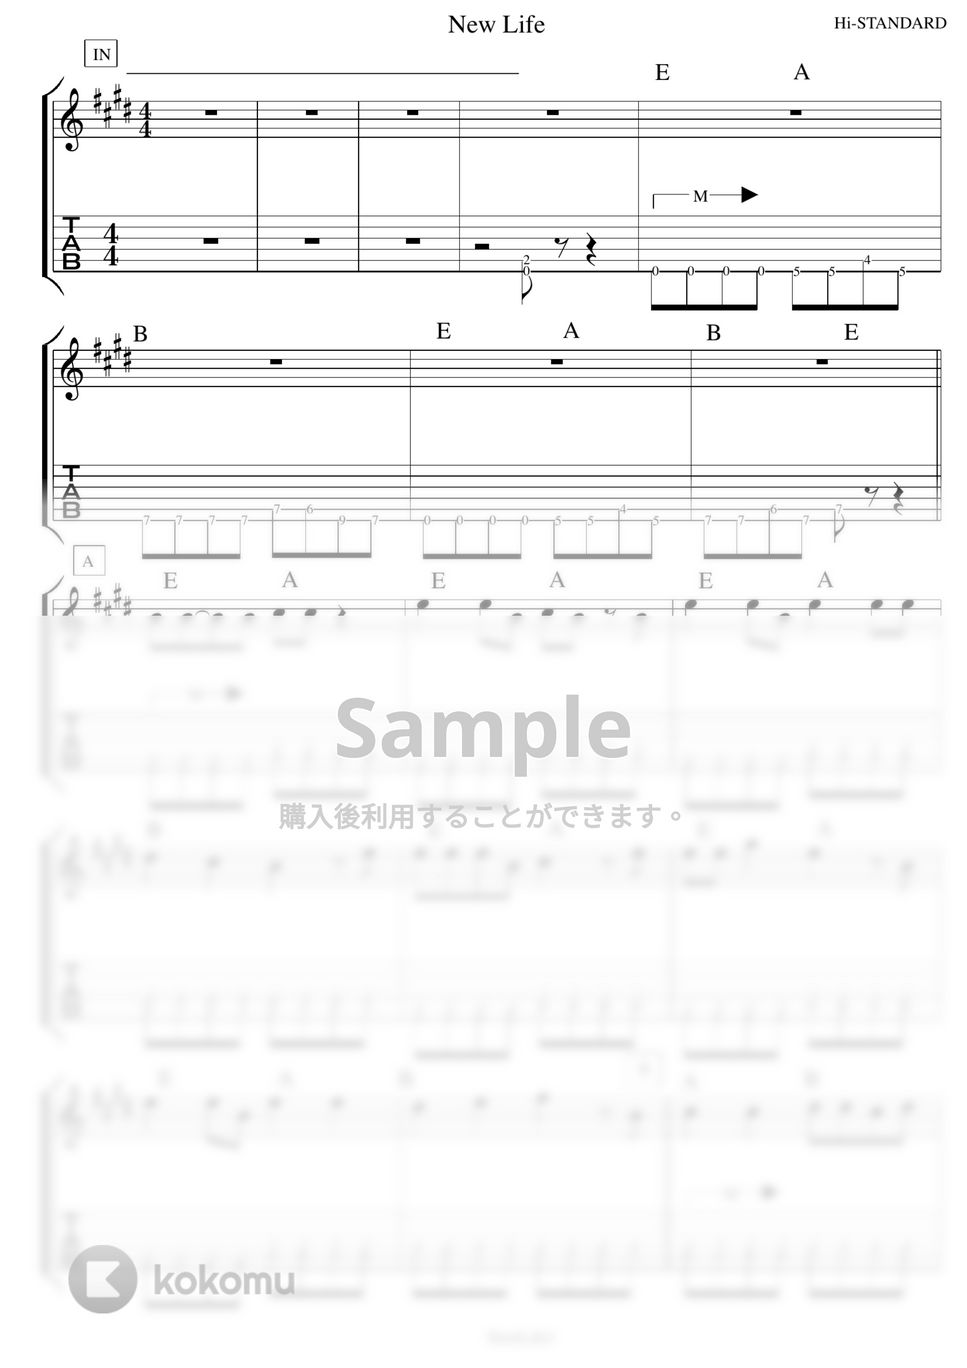 Hi-STANDARD - NewLife ギター演奏動画付TAB譜 by バイトーン音楽教室